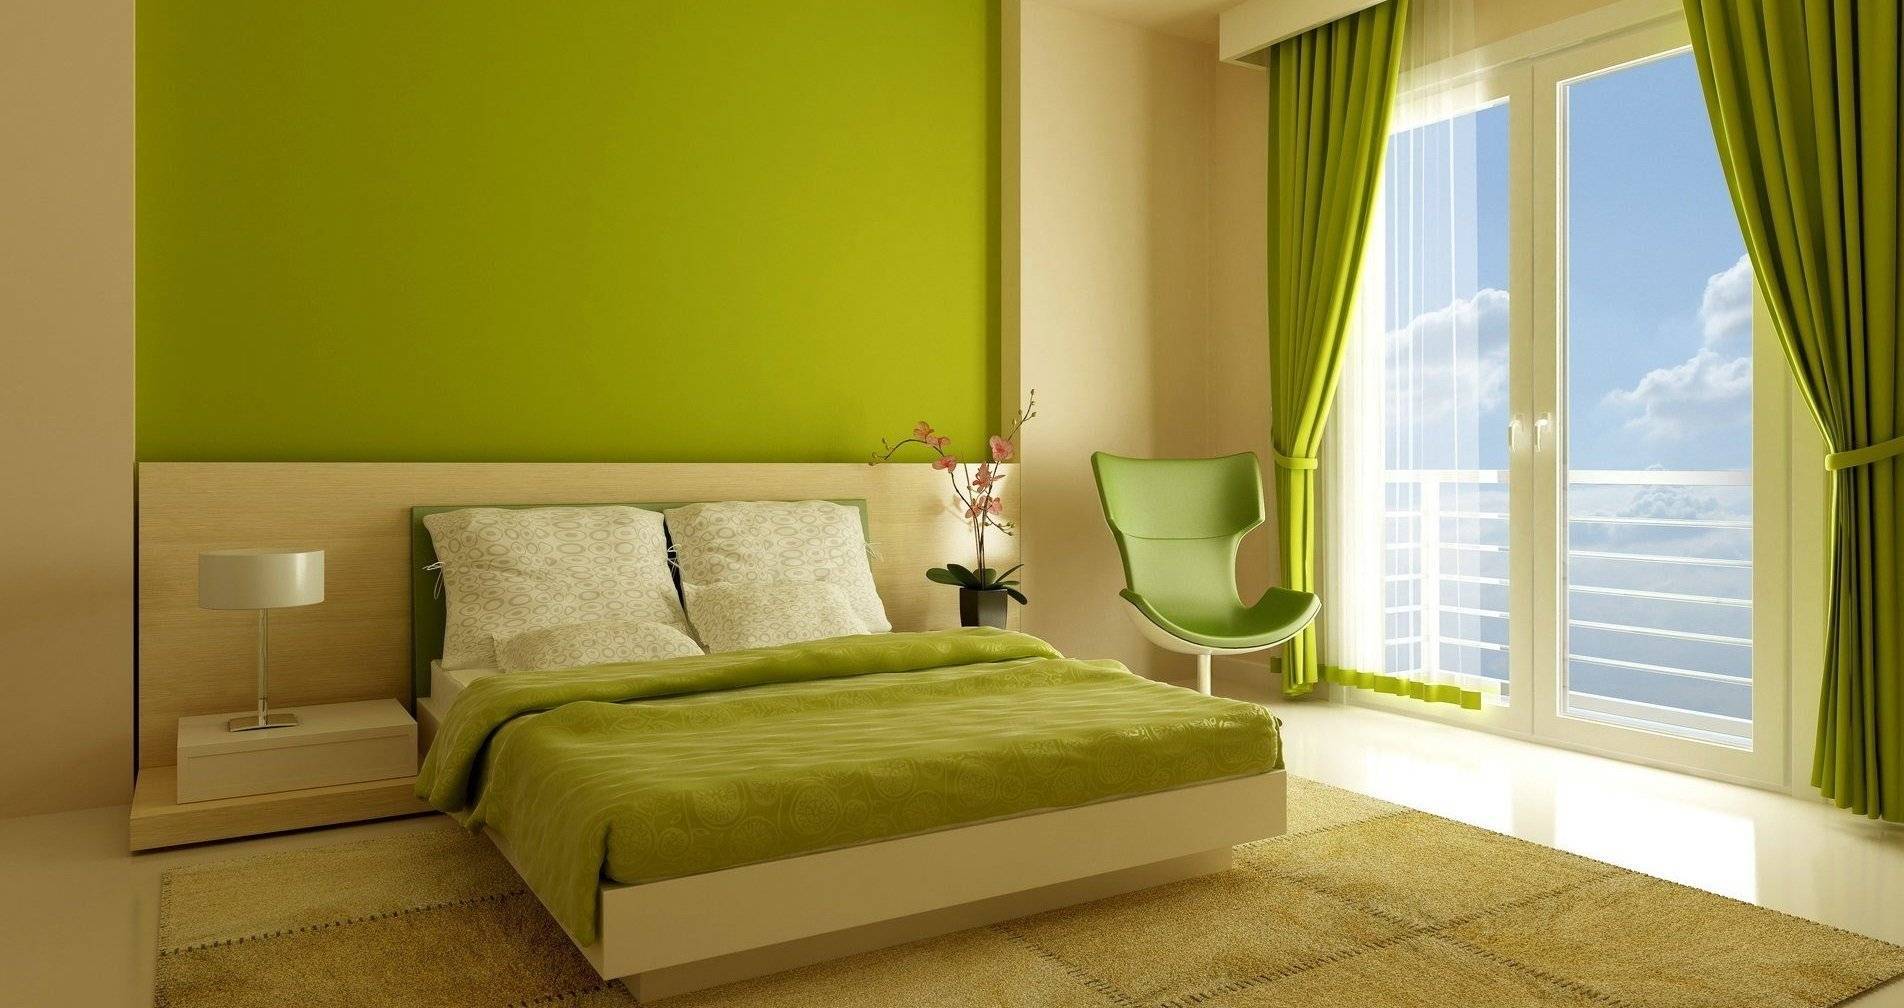 Идеи оформления спален в зеленых тонах: актуальные сочетания, новые идеи дизайна (+77 фото)